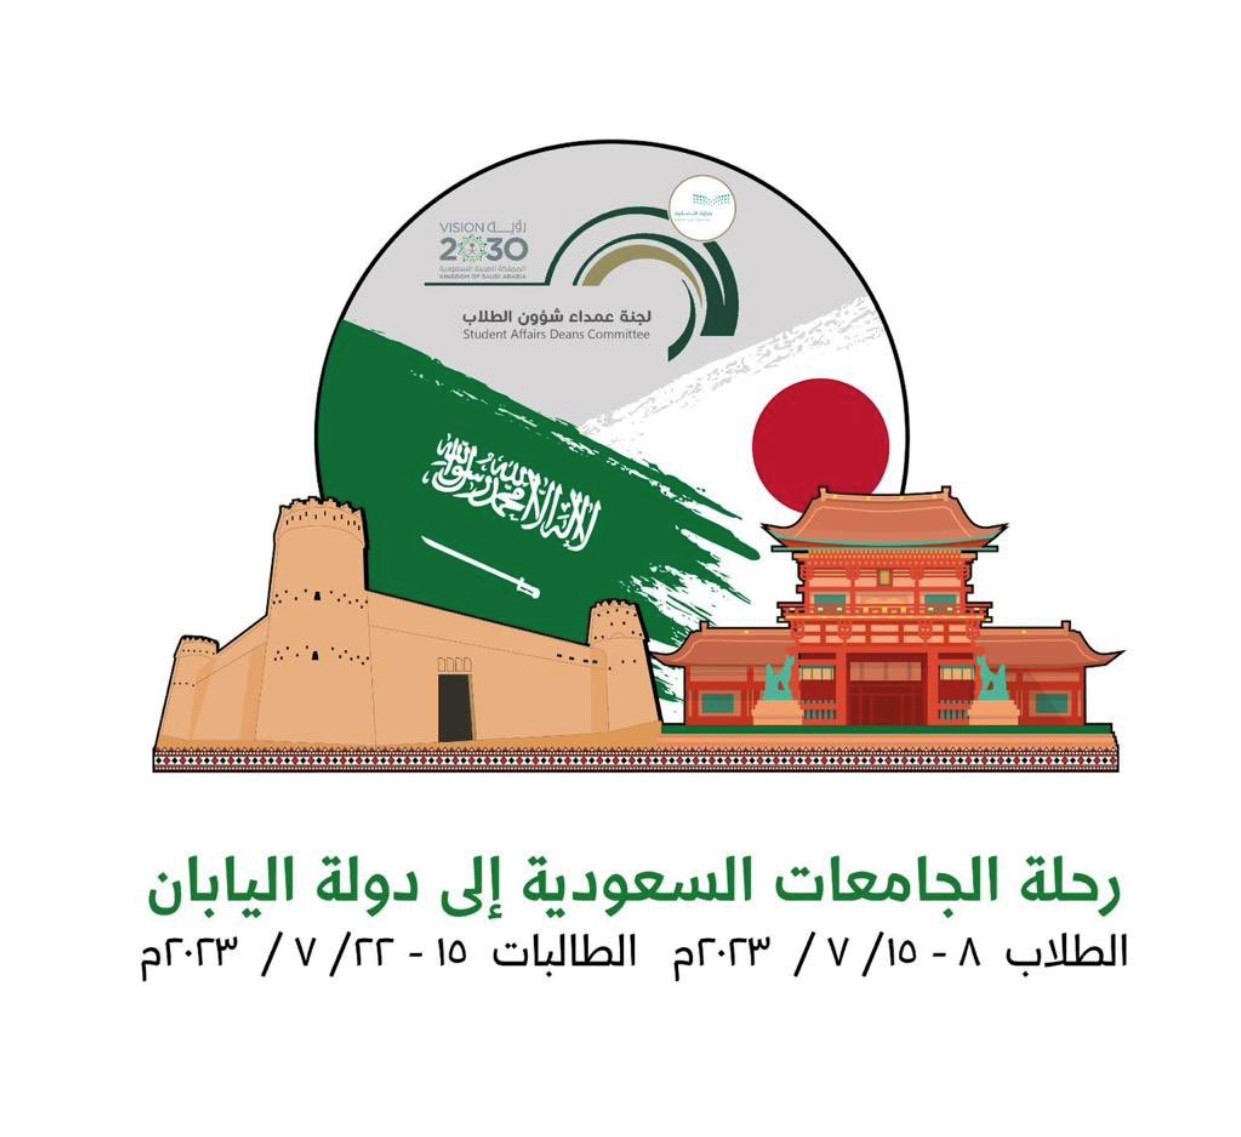 رحلة الجامعات السعودية إلى دولة اليابان